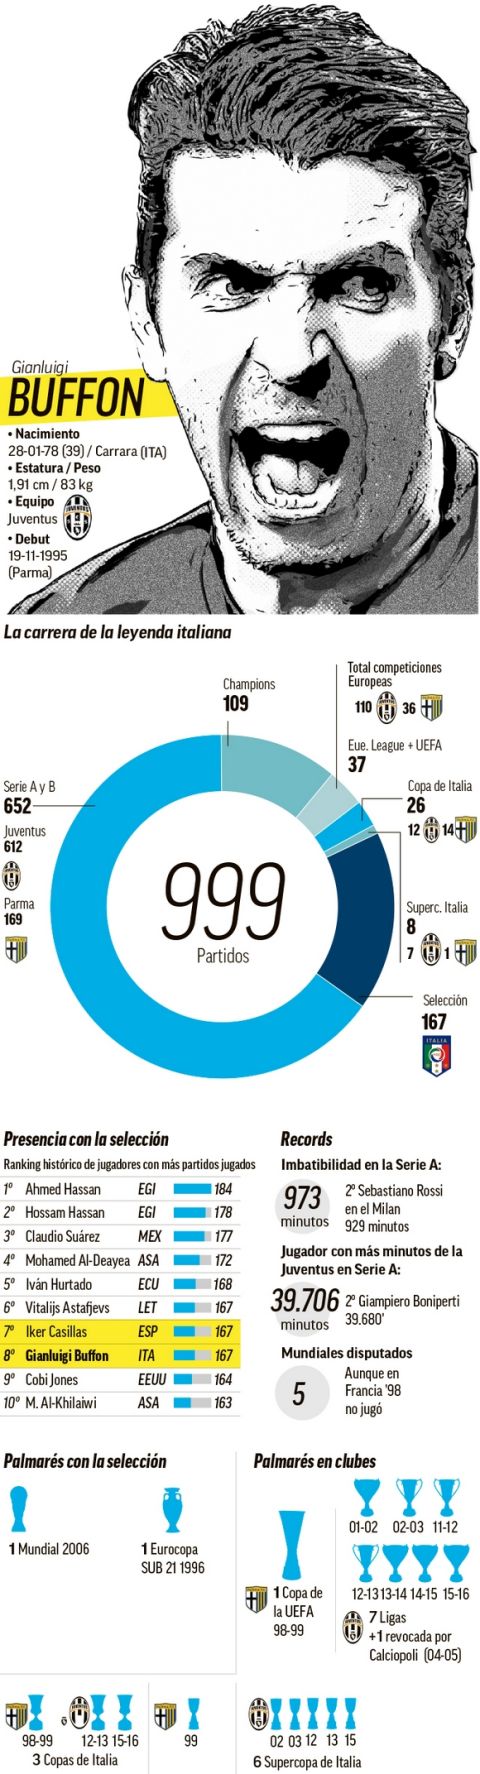 Το εκπληκτικό infographic της Marca για τον Μπουφόν